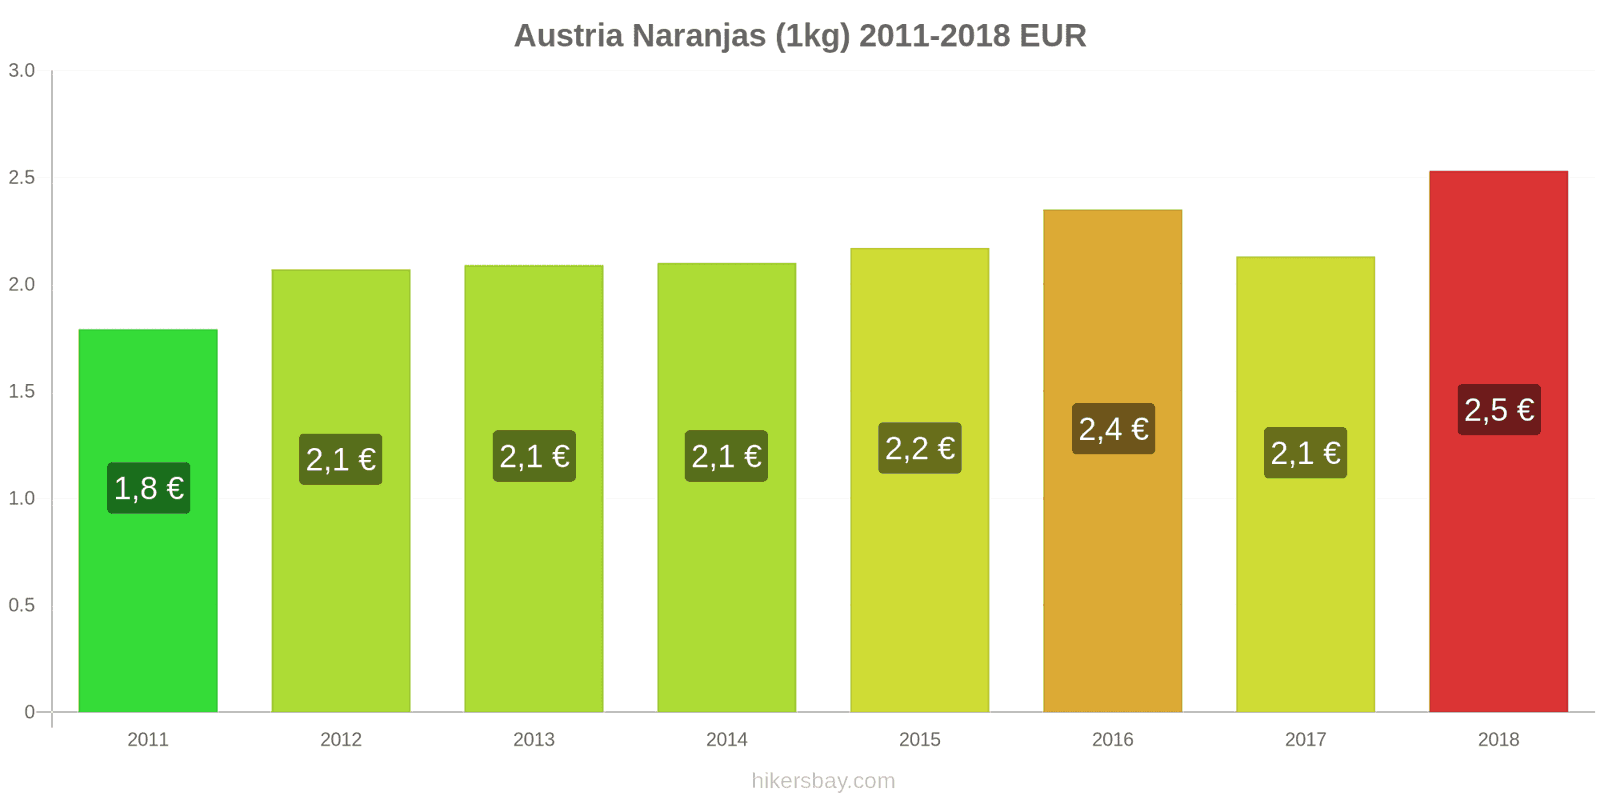 Austria cambios de precios Naranjas (1kg) hikersbay.com